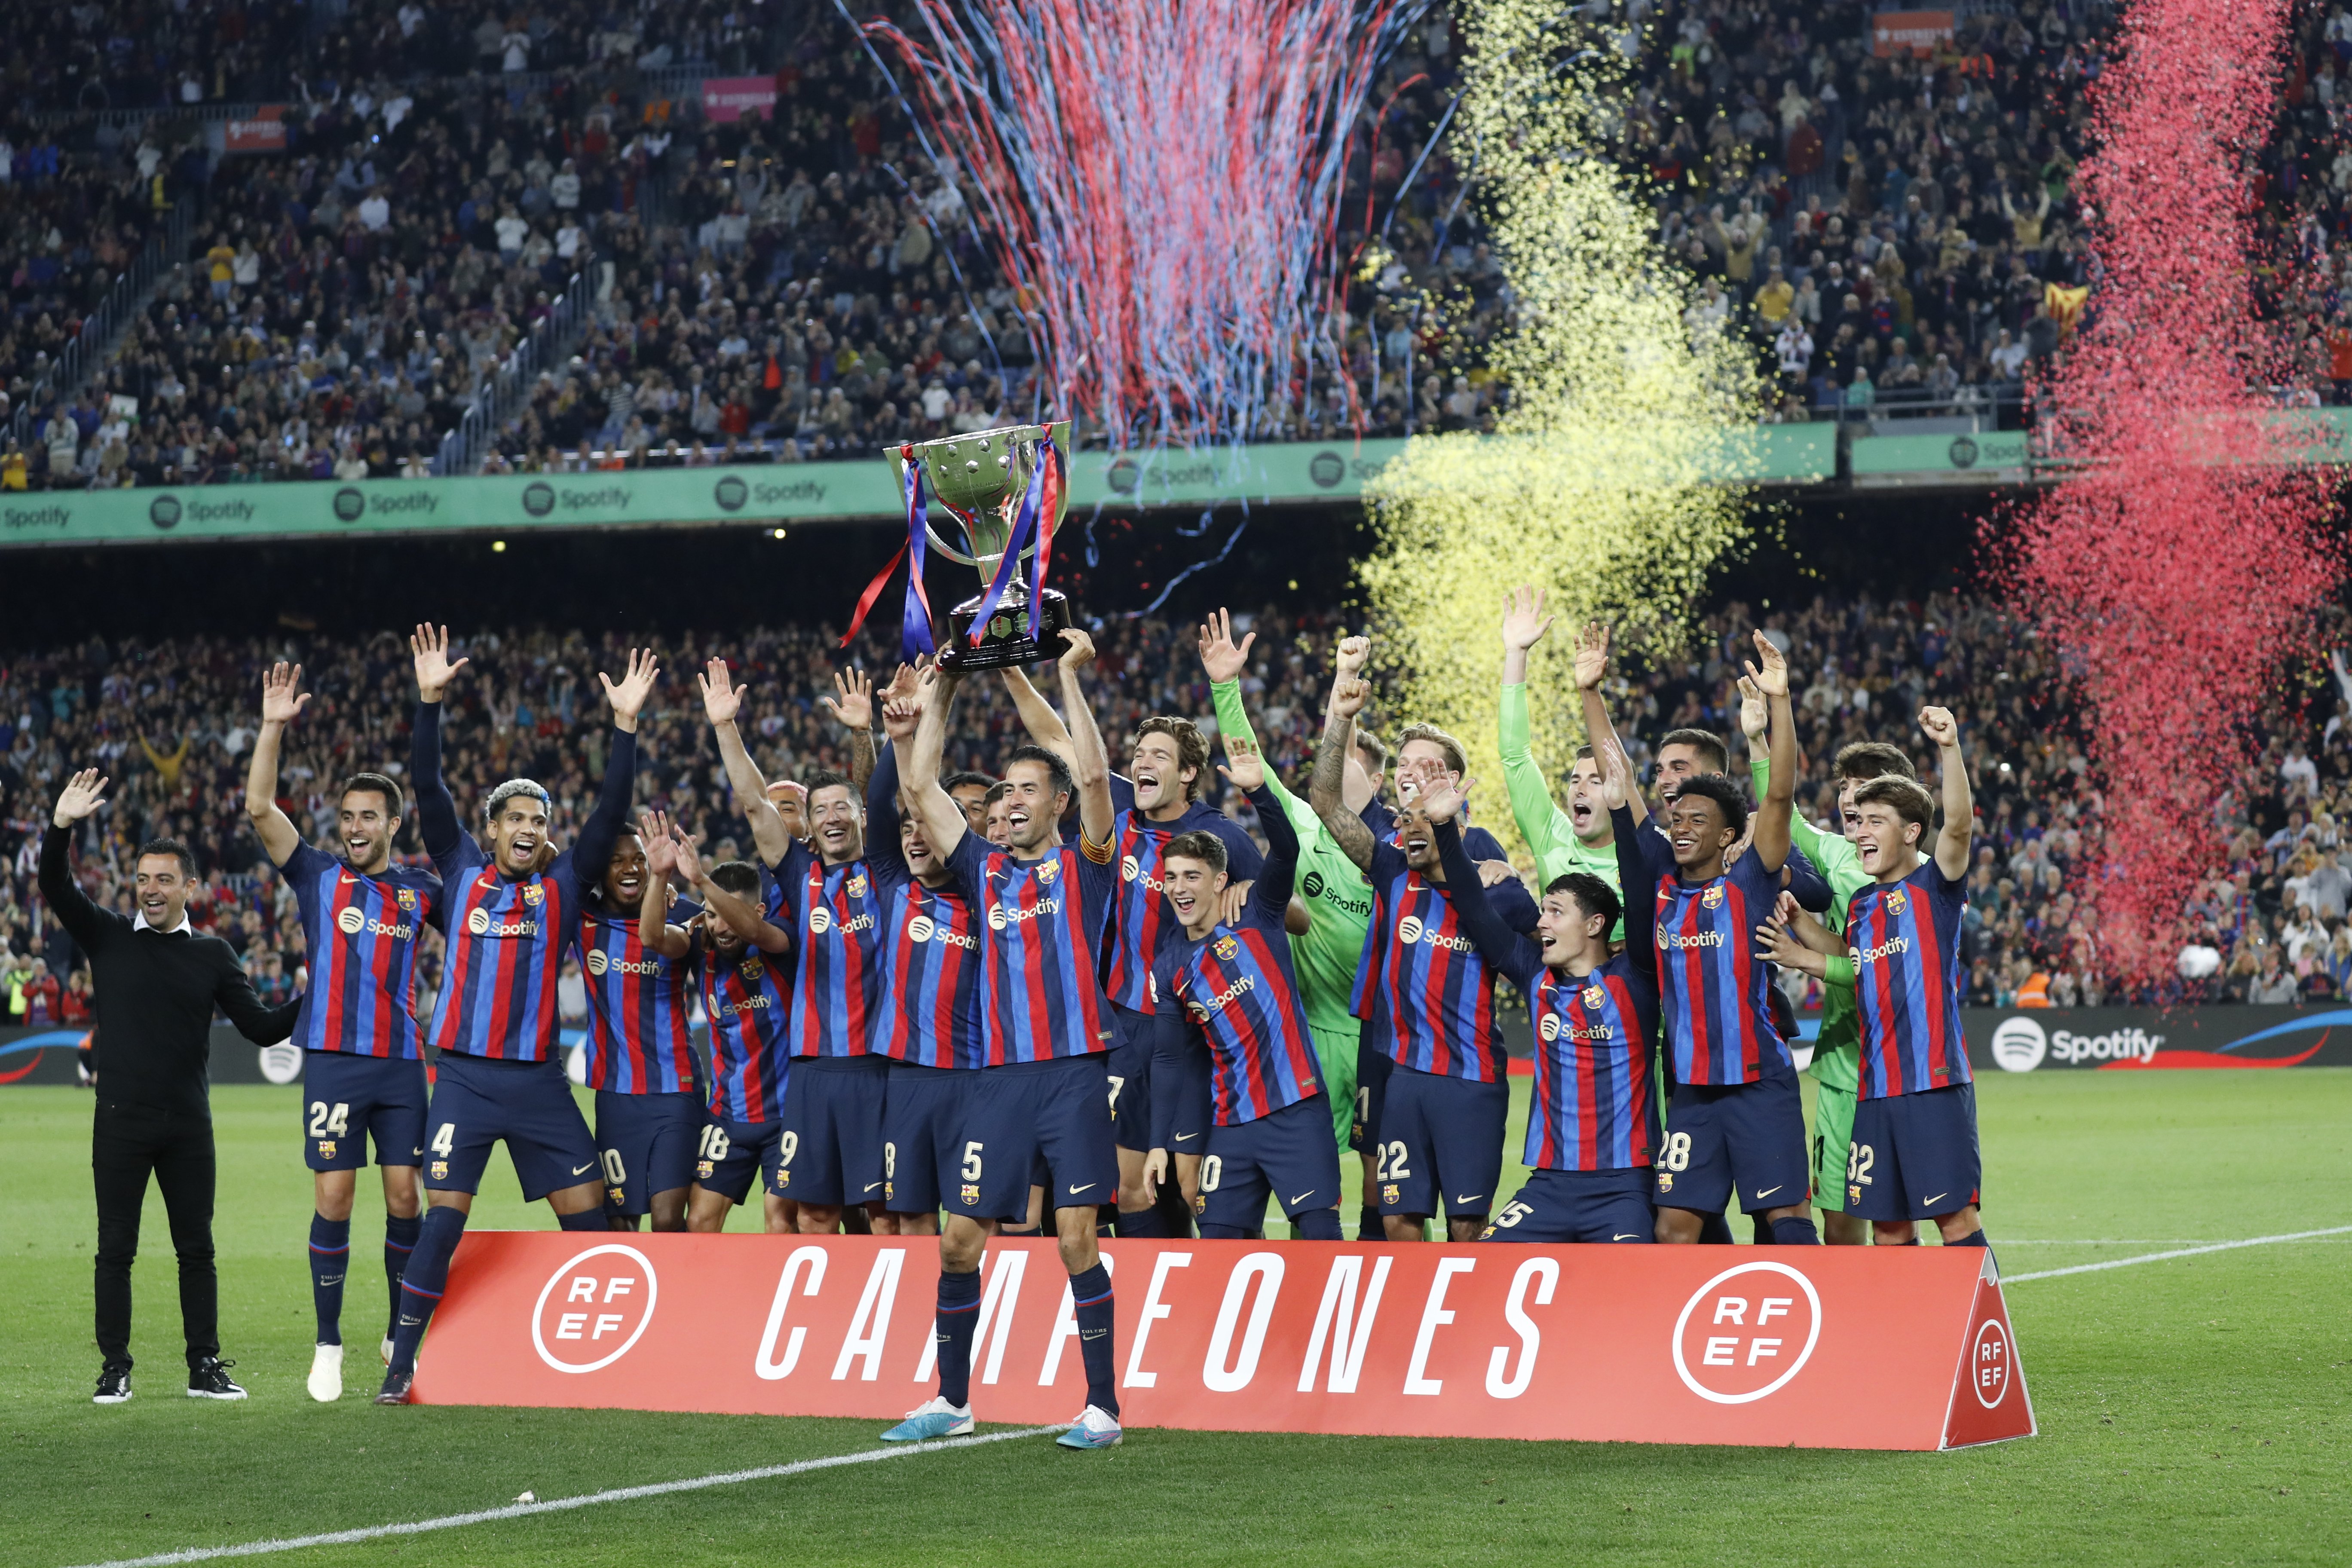 El Barça celebra la Lliga amb l'afició: "Presi, no estem tan malament"